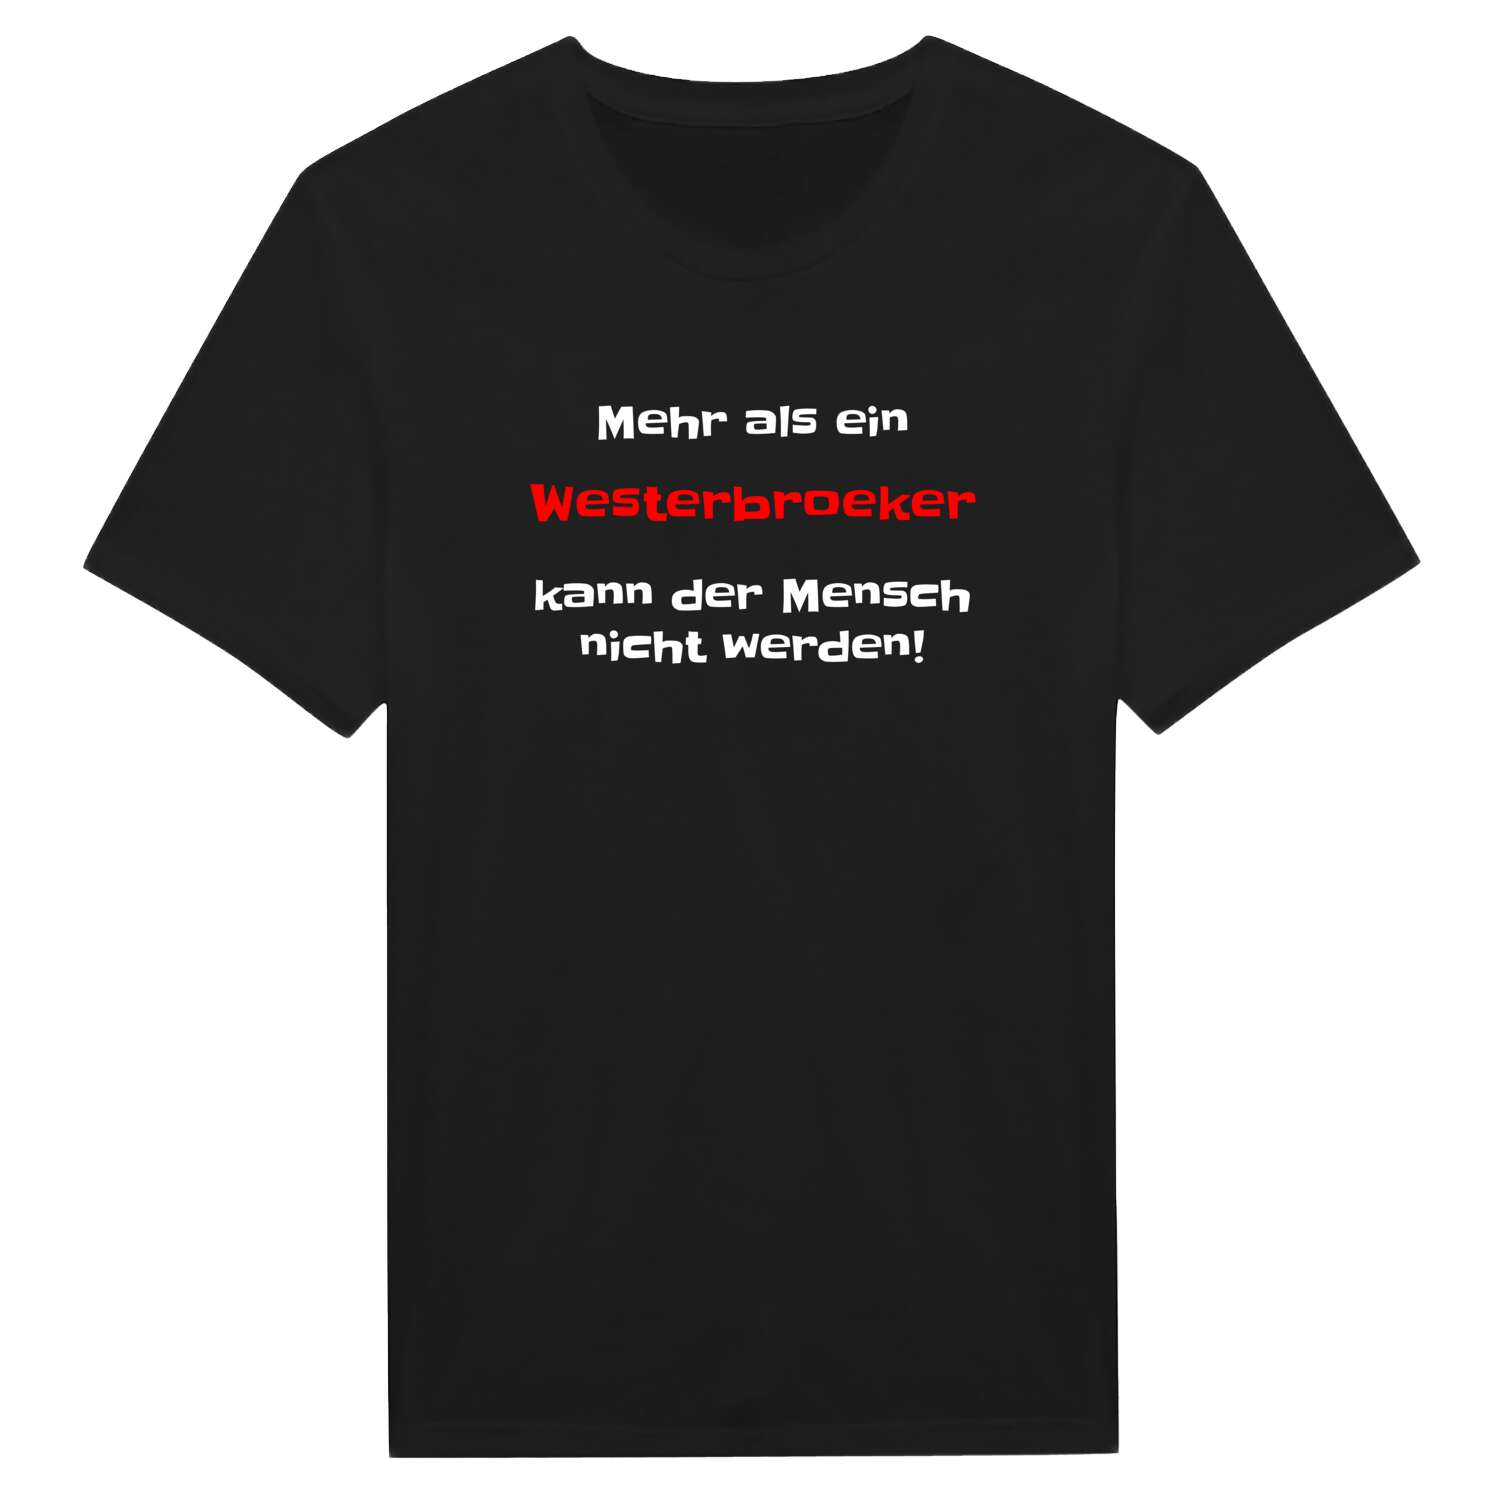 Westerbroek T-Shirt »Mehr als ein«